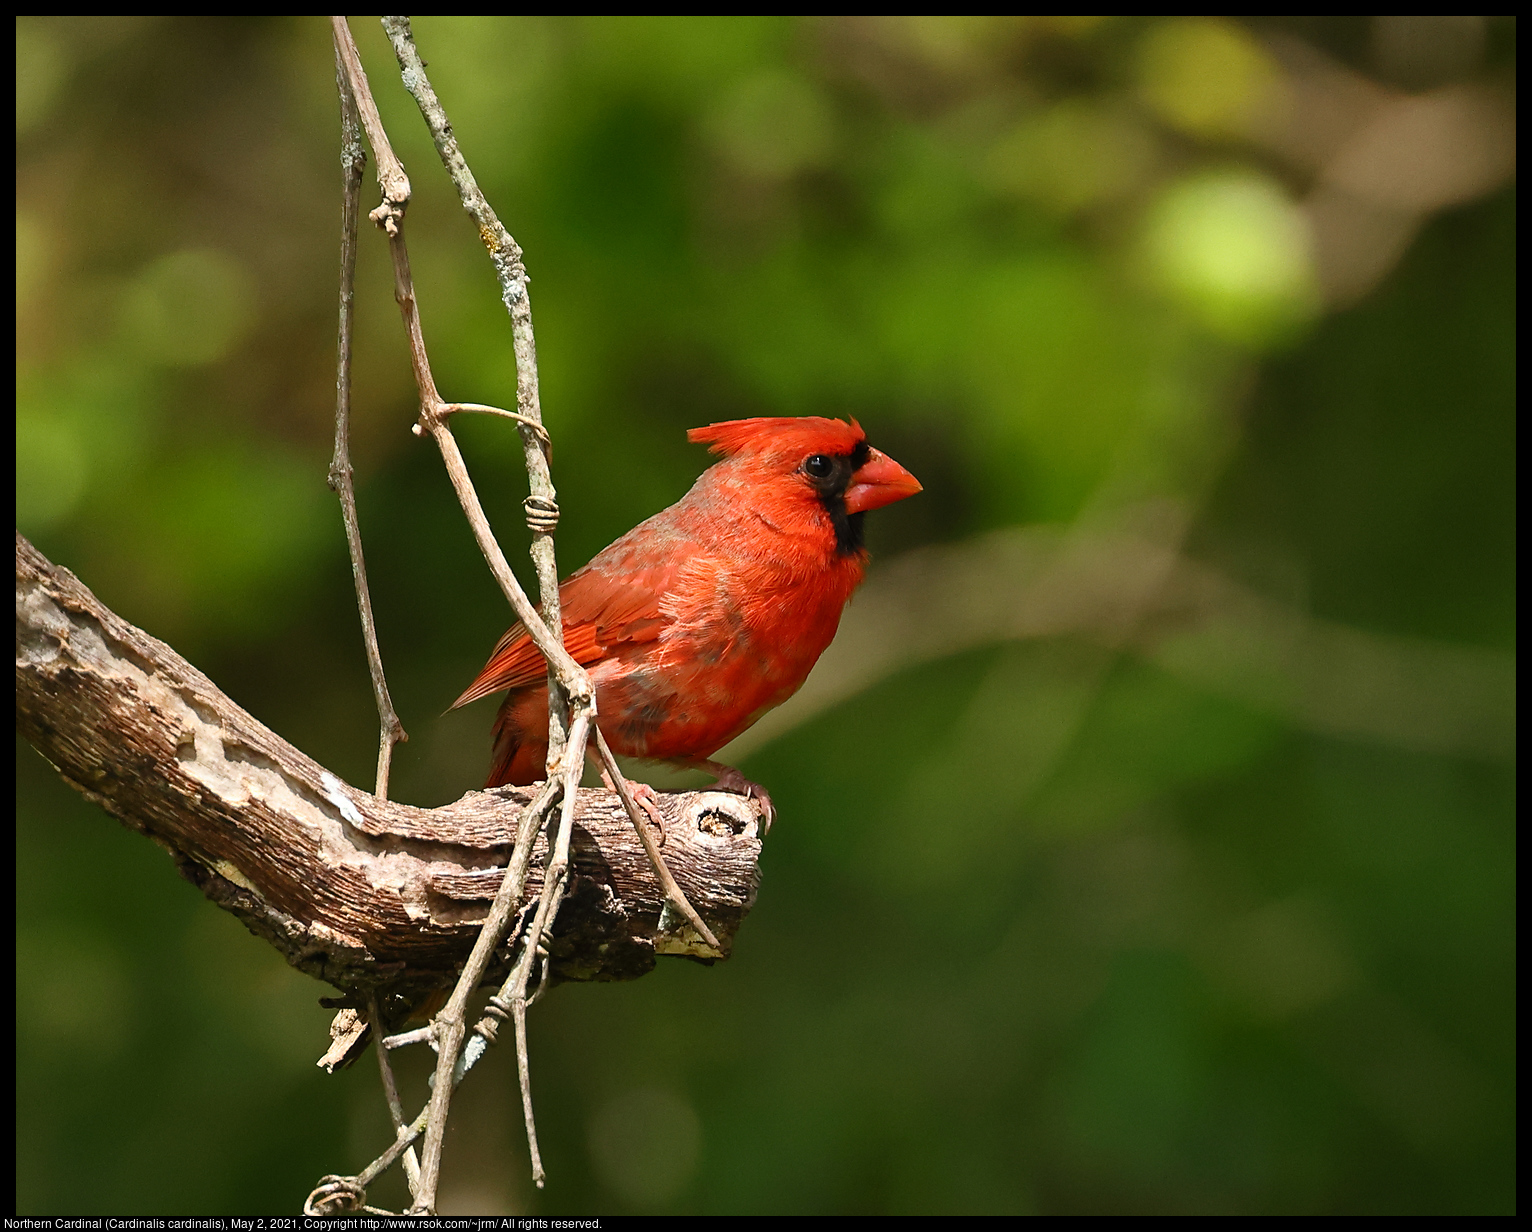 Northern Cardinal (Cardinalis cardinalis), May 2, 2021